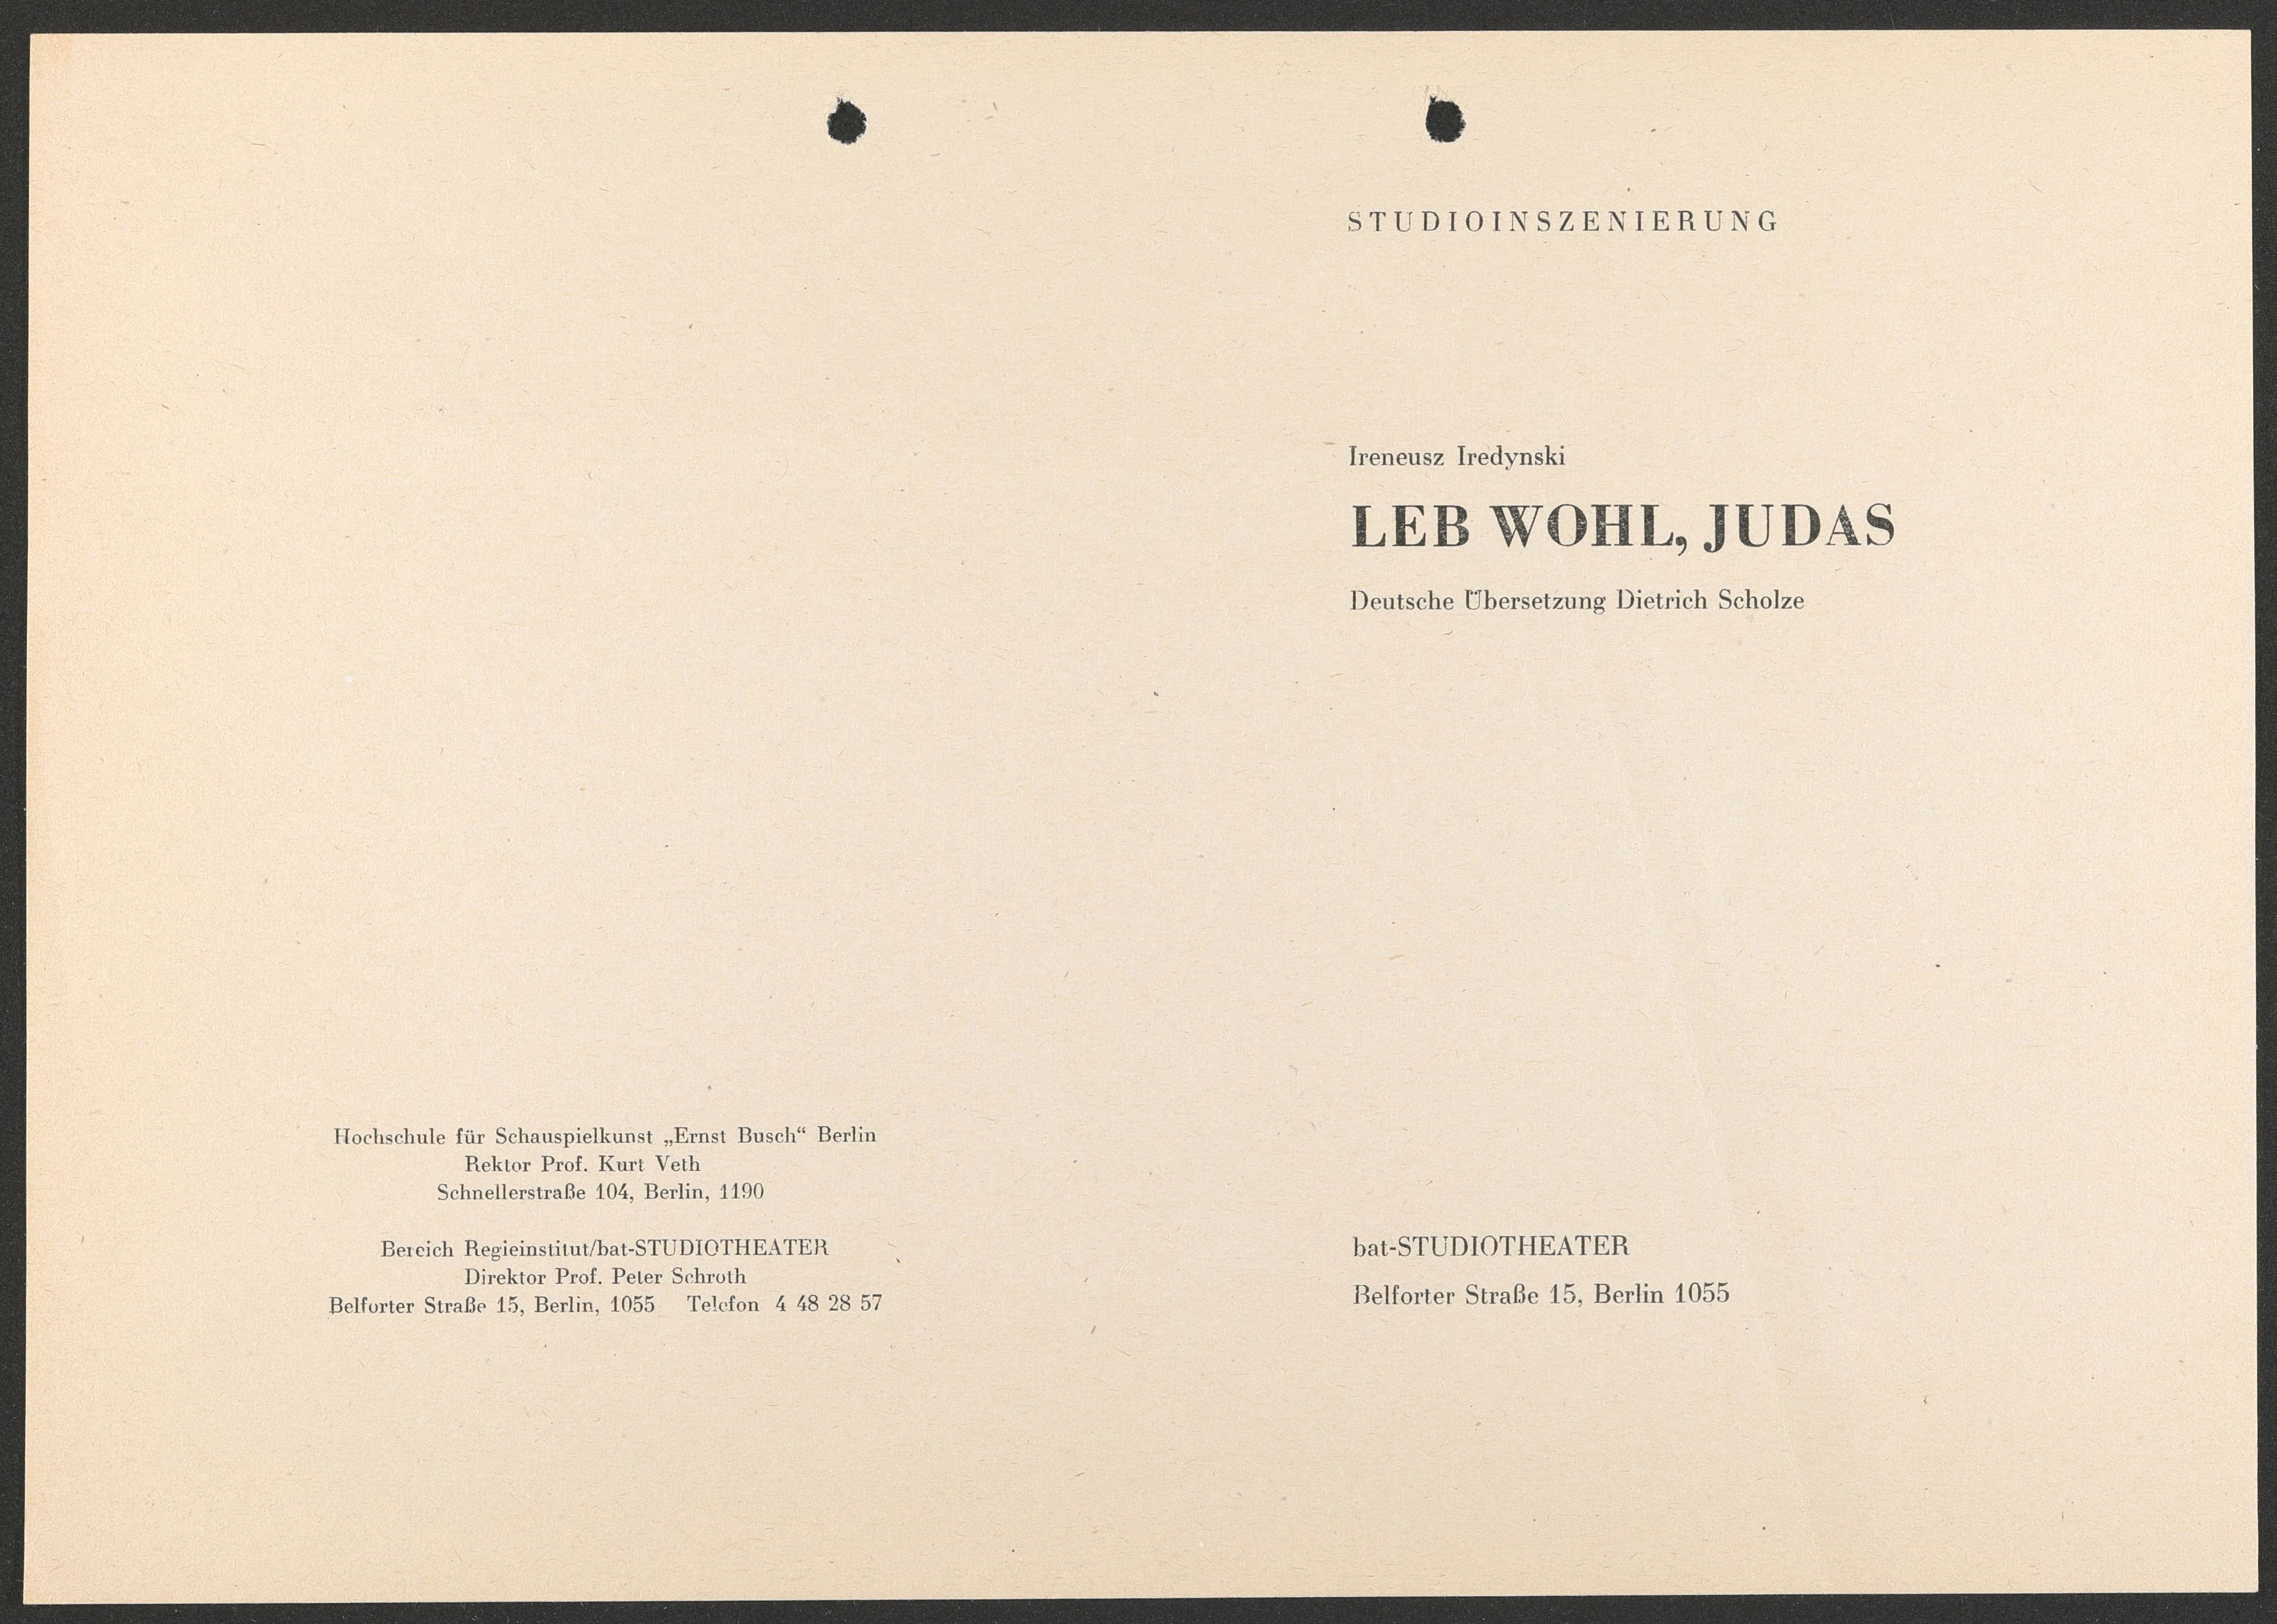 Programmheft zu "Leb wohl, Judas" am bat-Studiotheater 1990 (Hochschule für Schauspielkunst Ernst Busch Berlin RR-F)